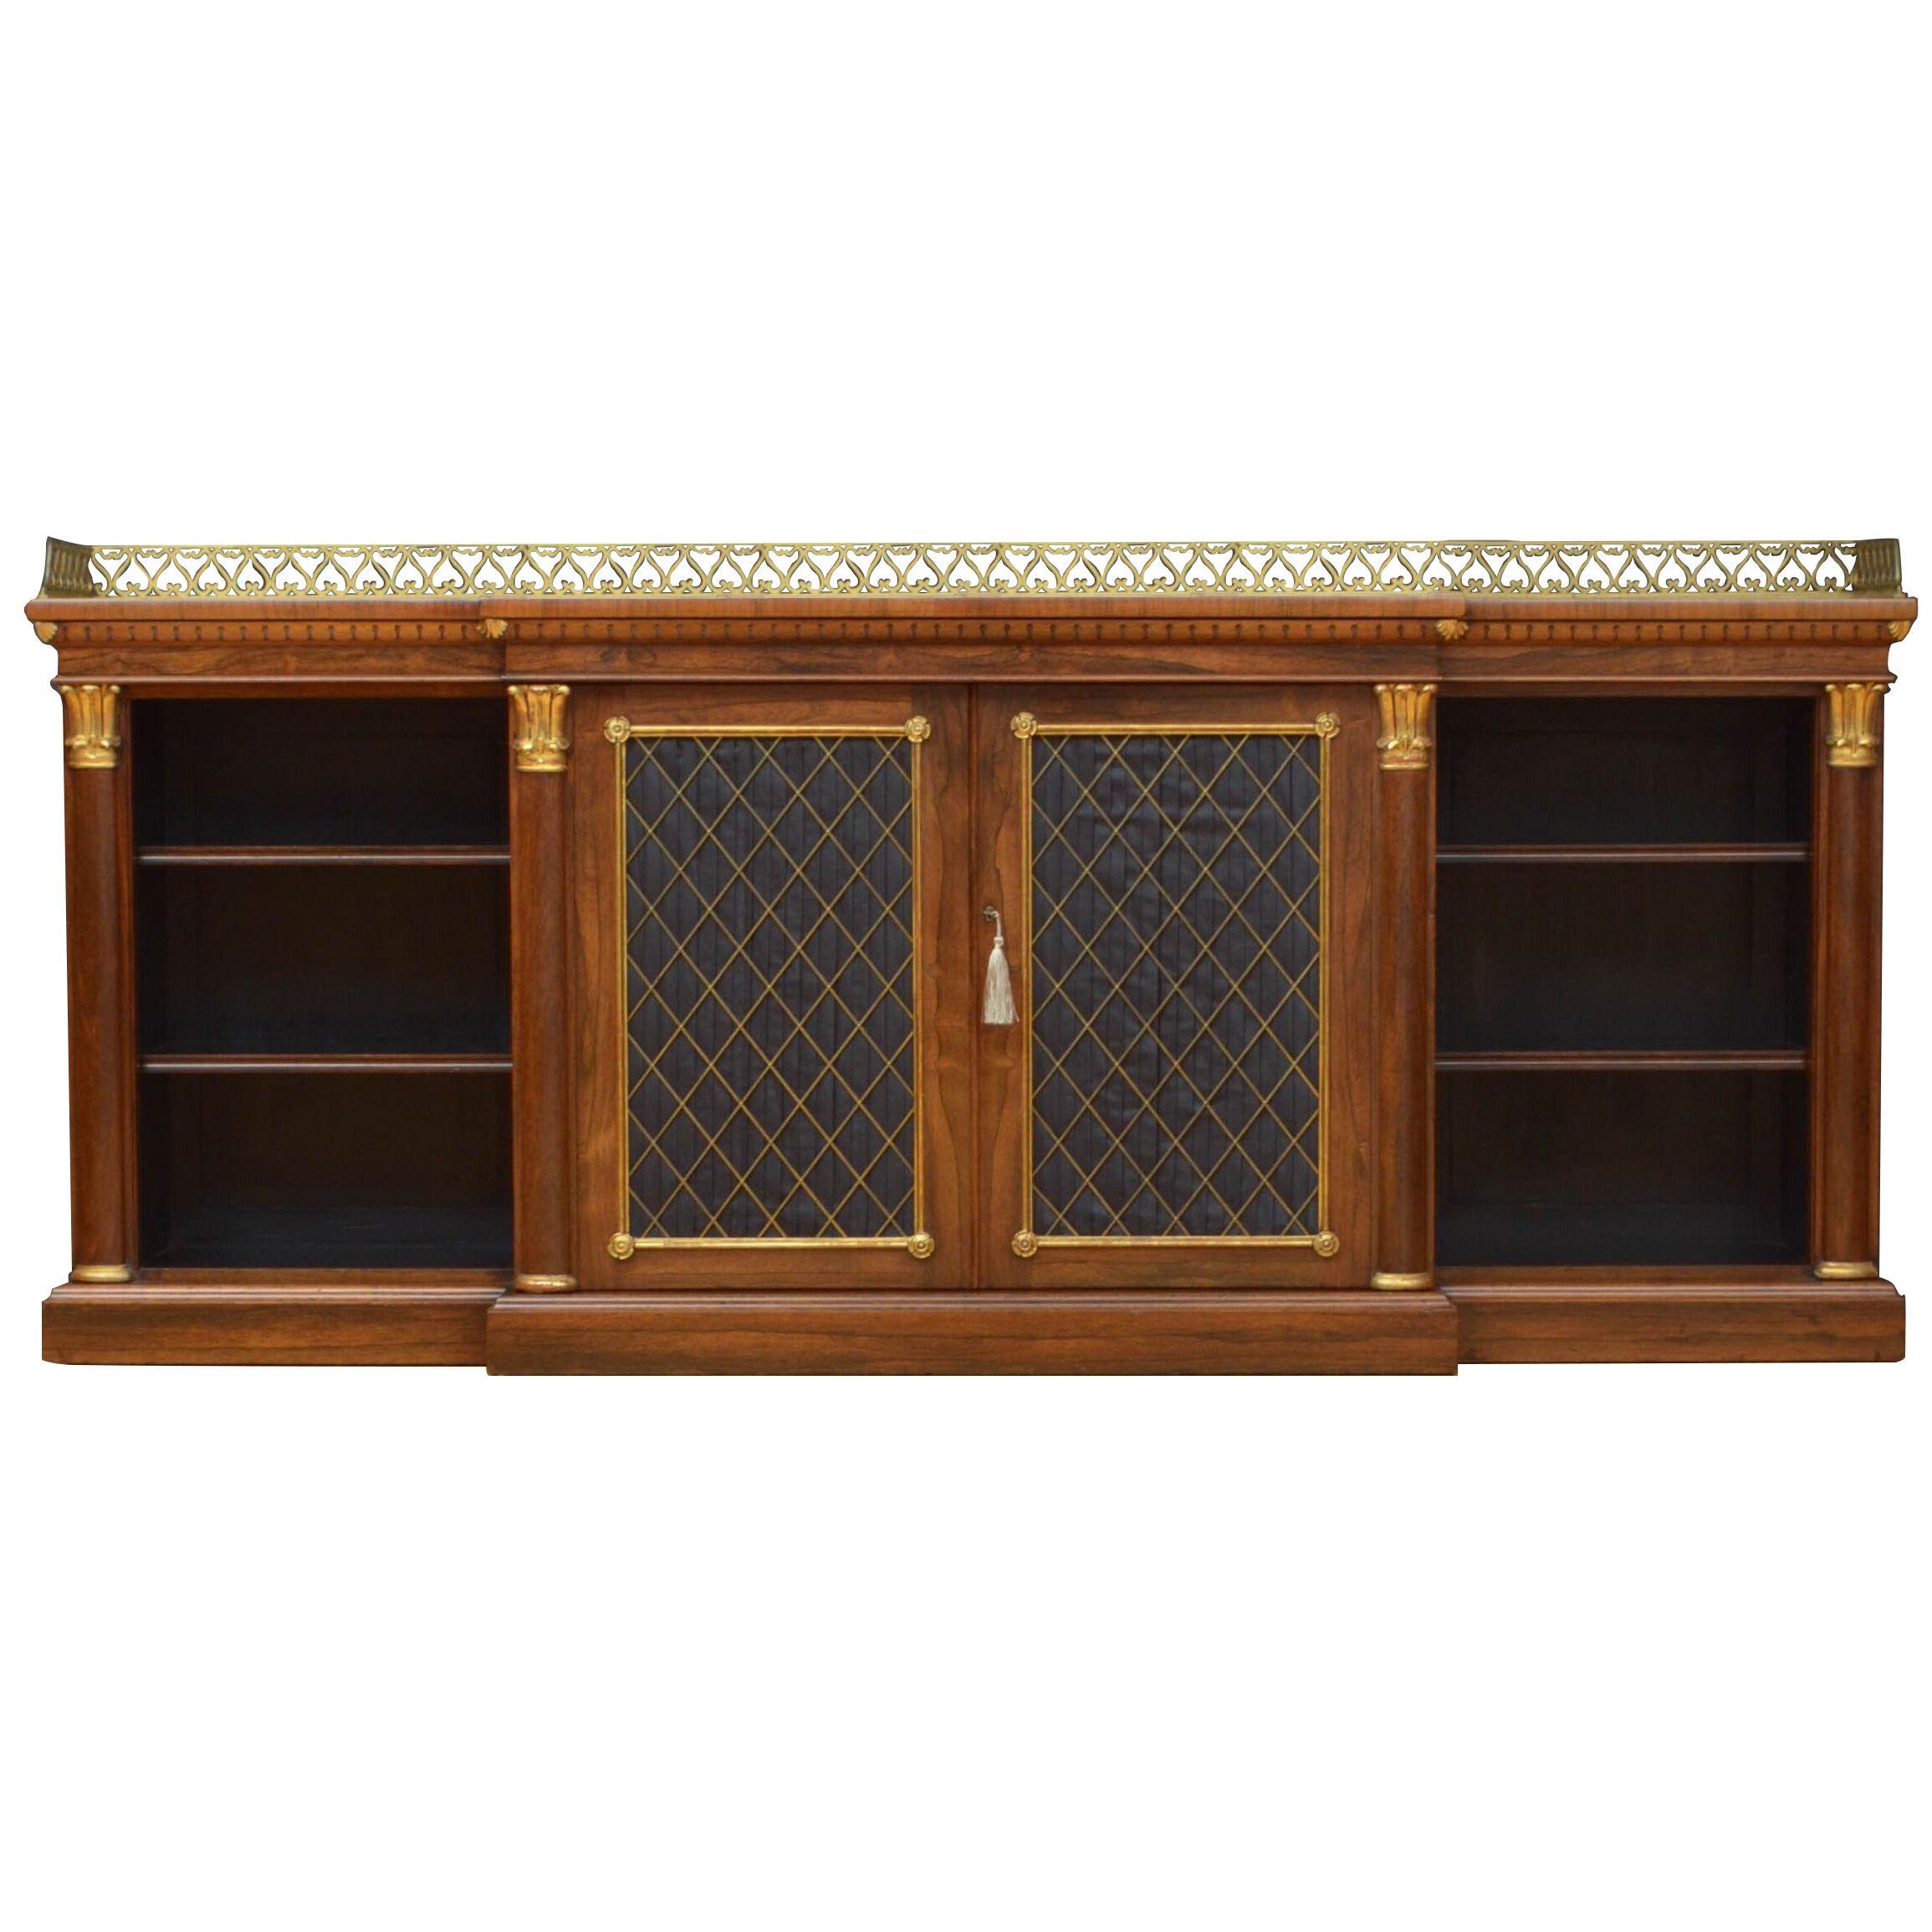 Superb Regency Bookcase or Sideboard